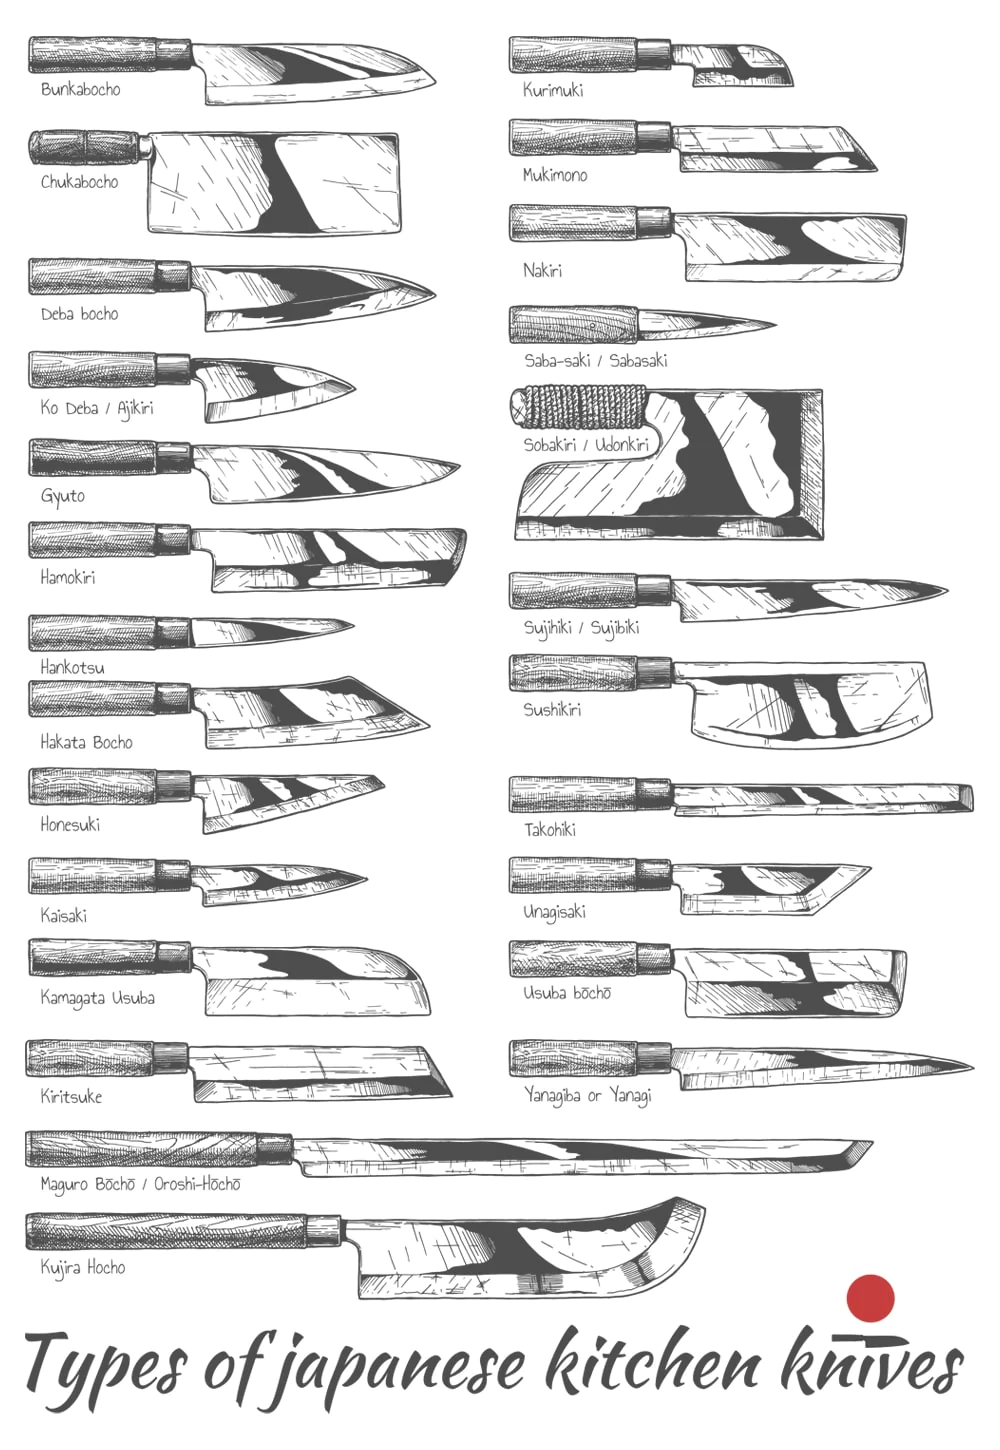 Type_of_Japanese_kitchen_knives-min_1d81c6f4-1f17-496e-bc55-bc19e91cf9f2